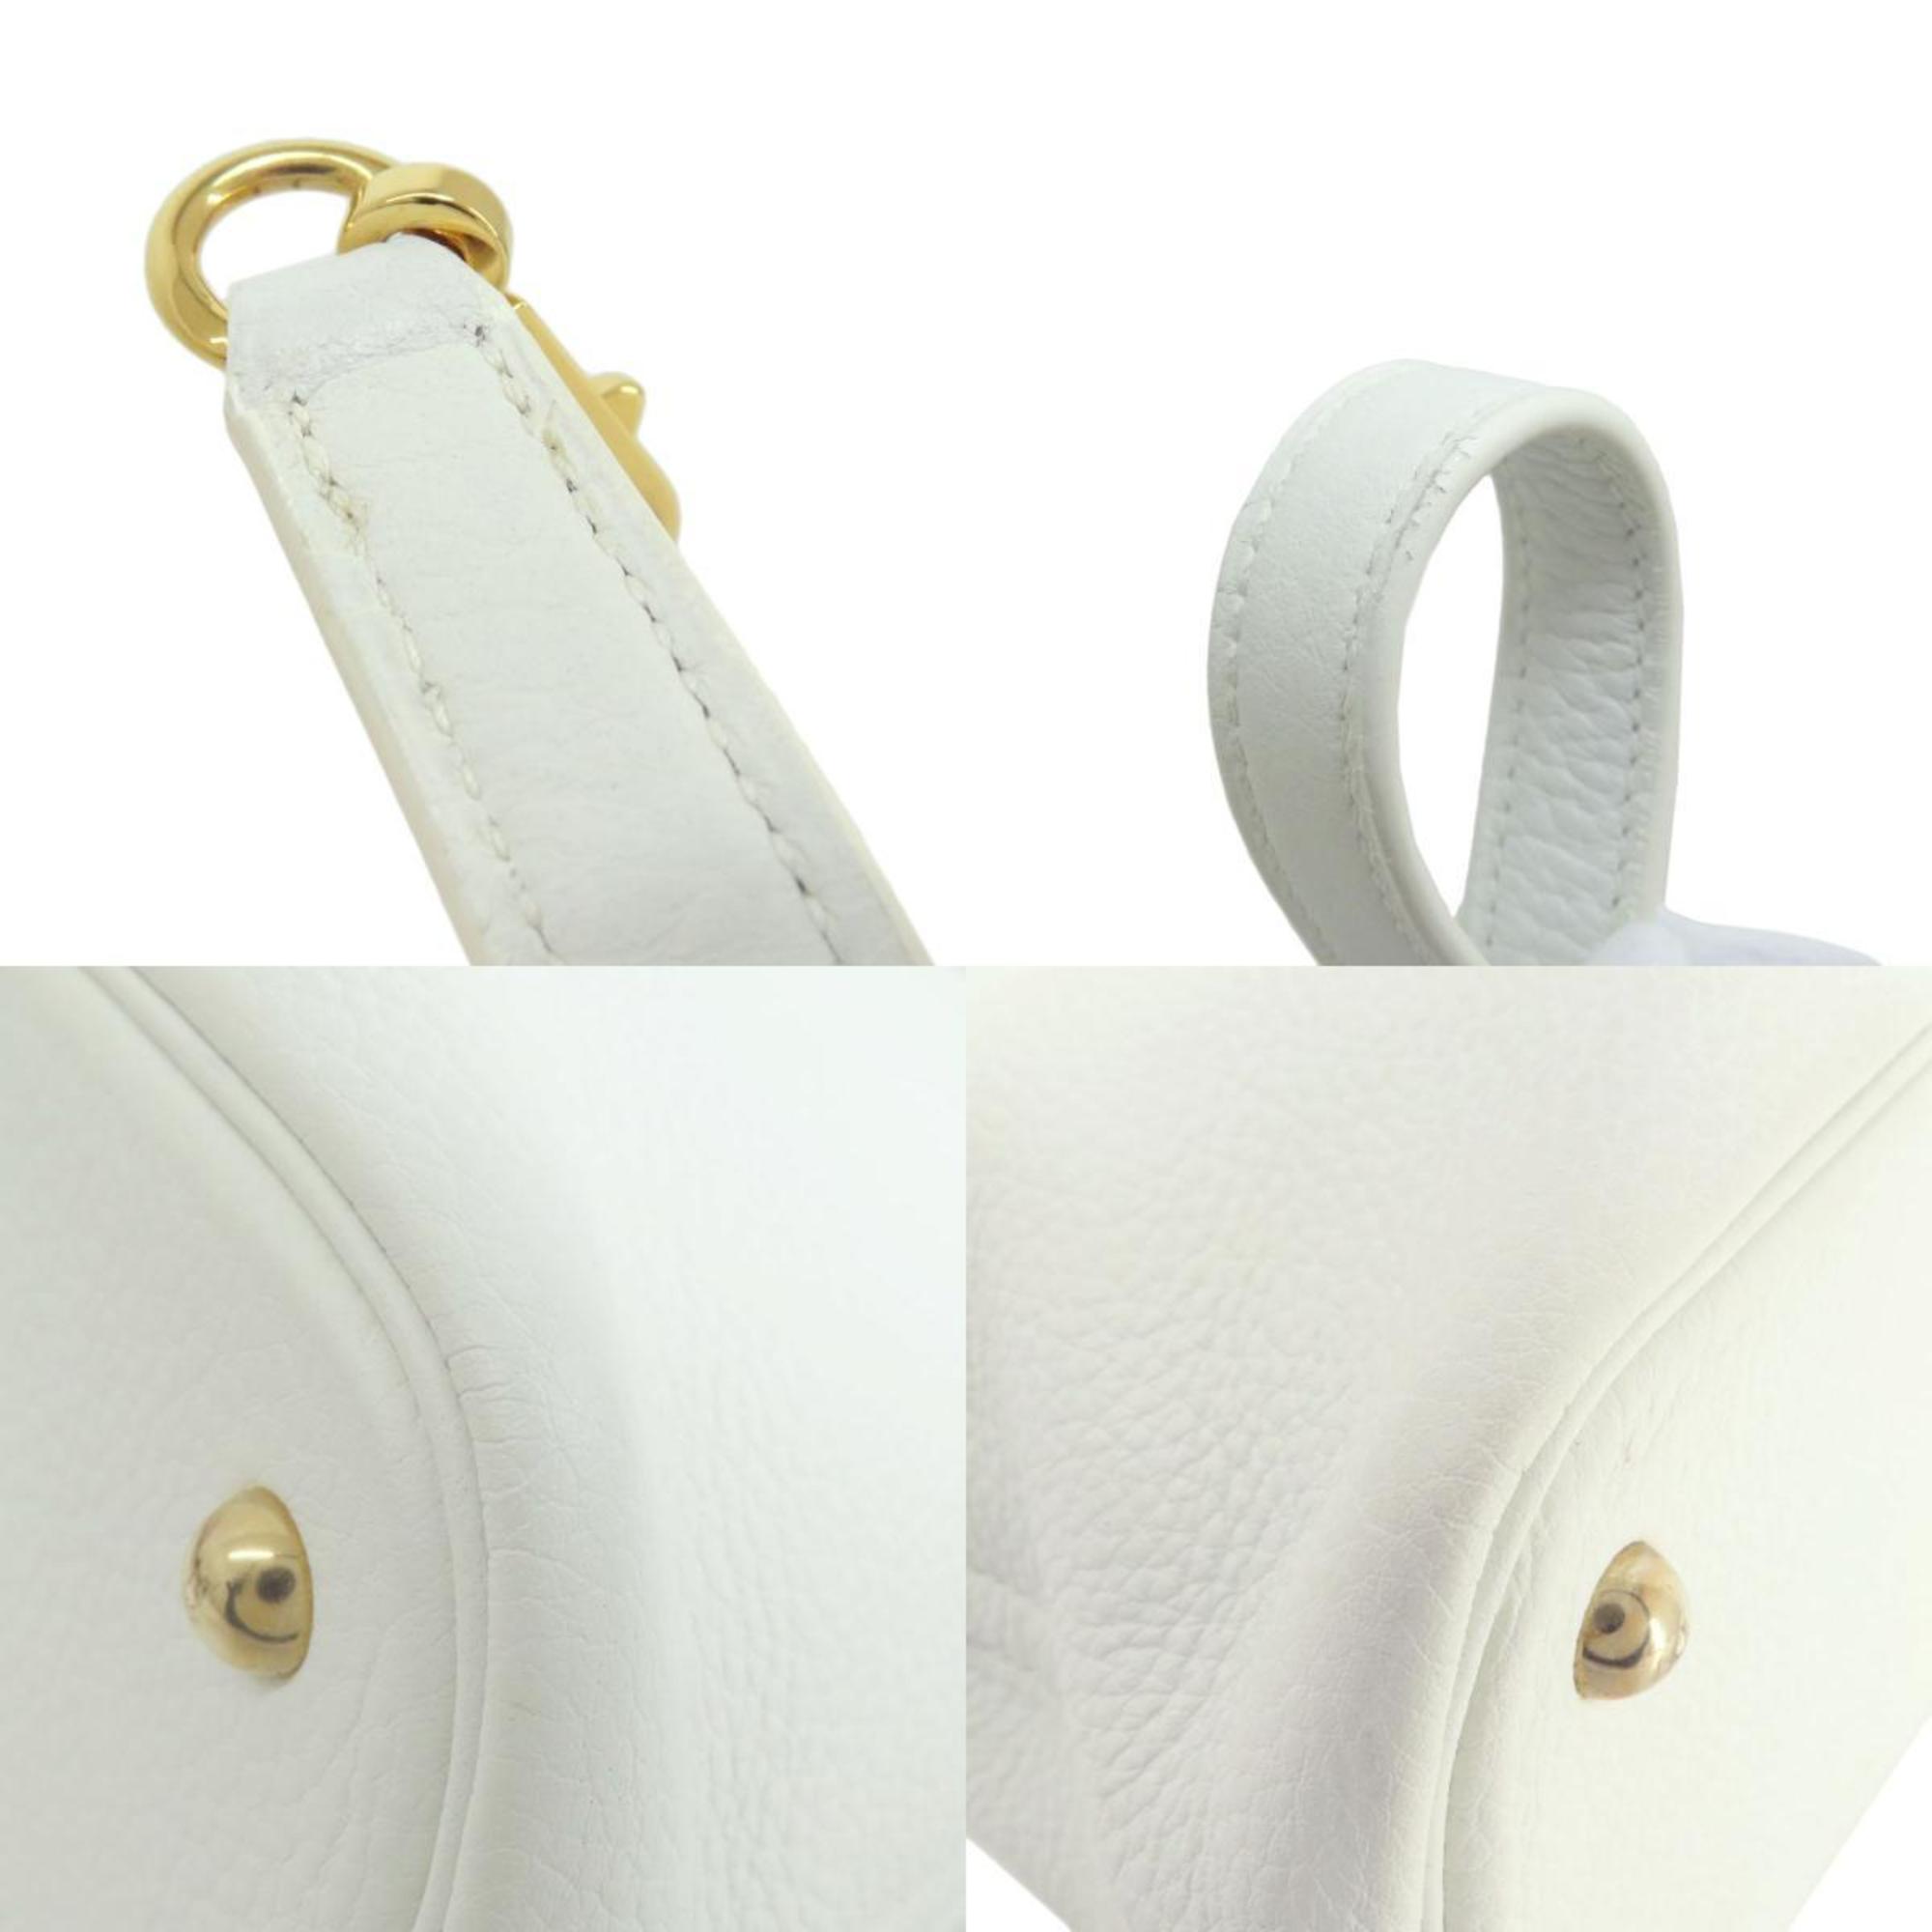 Hermes Bolide 31 White Handbag Taurillon Women's